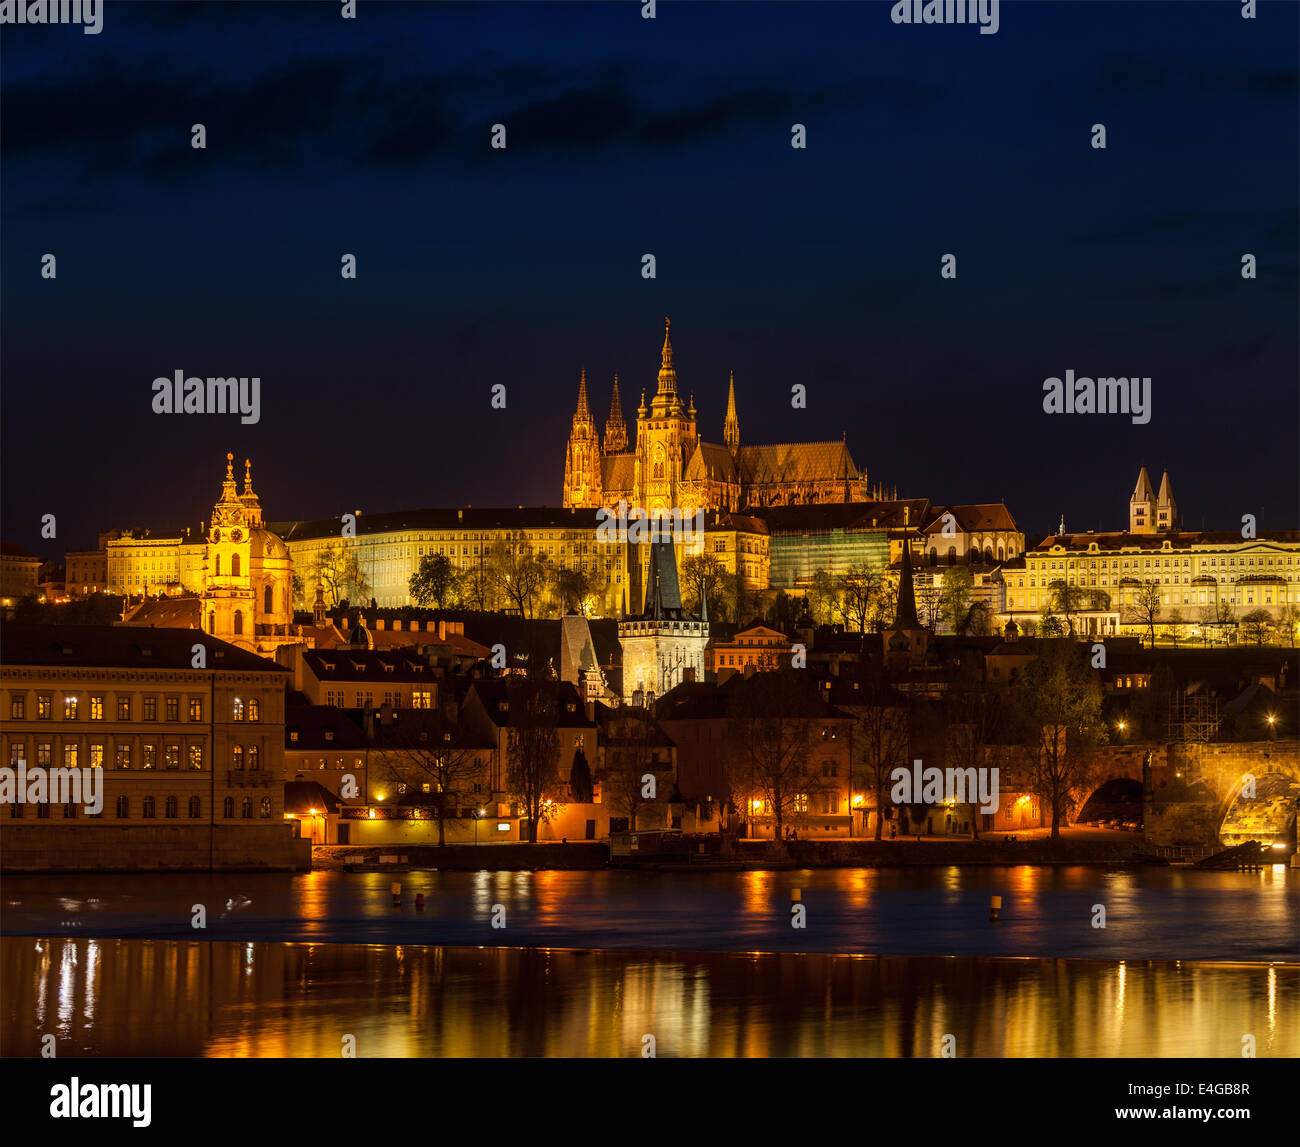 Reisen Prag Europa Konzept Hintergrund - Blick auf die Karlsbrücke und die Prager Burg in der Dämmerung. Prag, Tschechische Republik Stockfoto